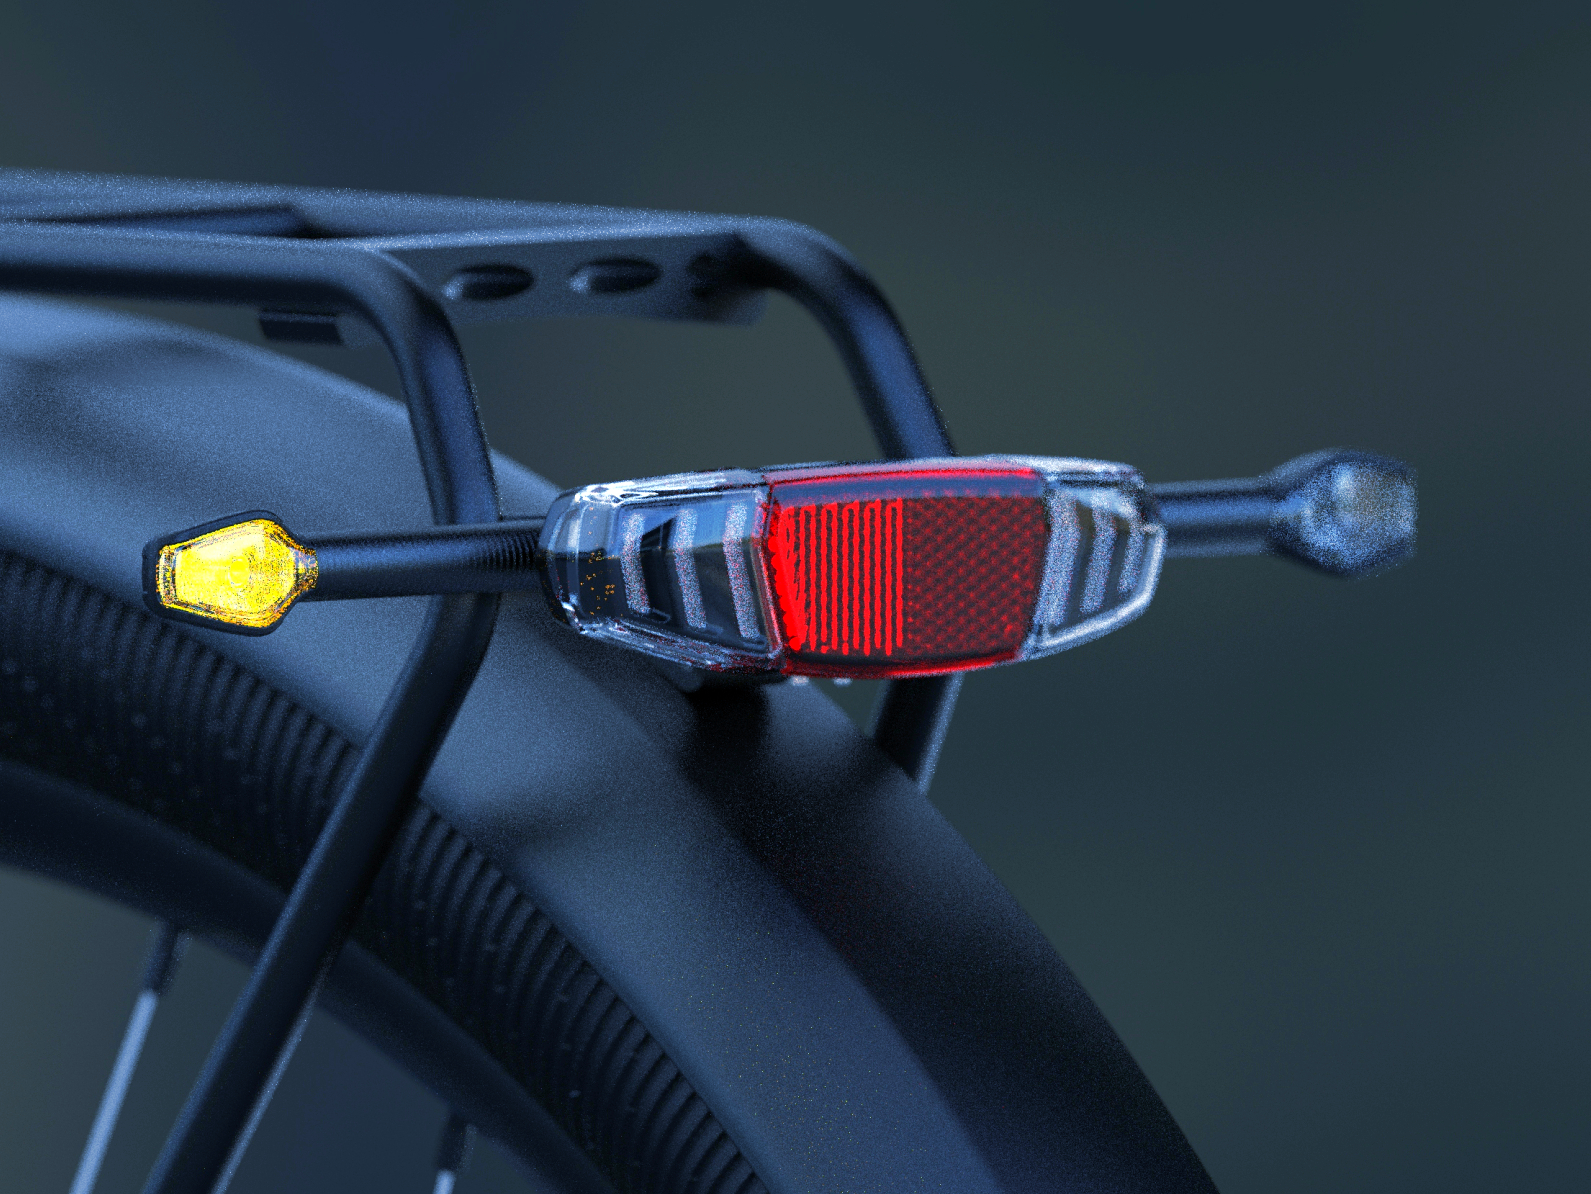 ADAC - Fahrradbeleuchtung: So seid ihr und euer Bike